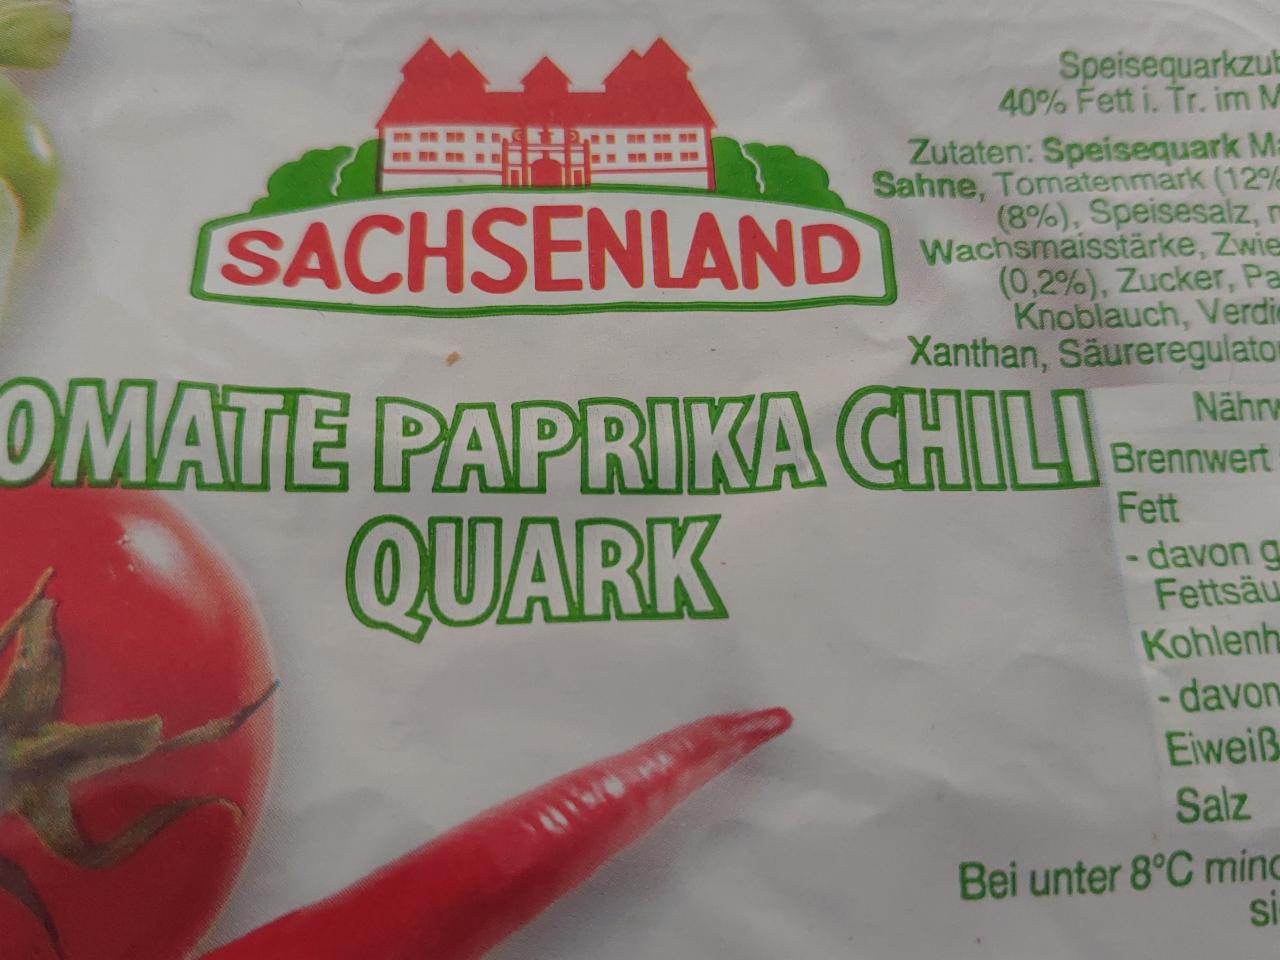 Fotografie - Tomaten paprika chili Quark Sachsenland